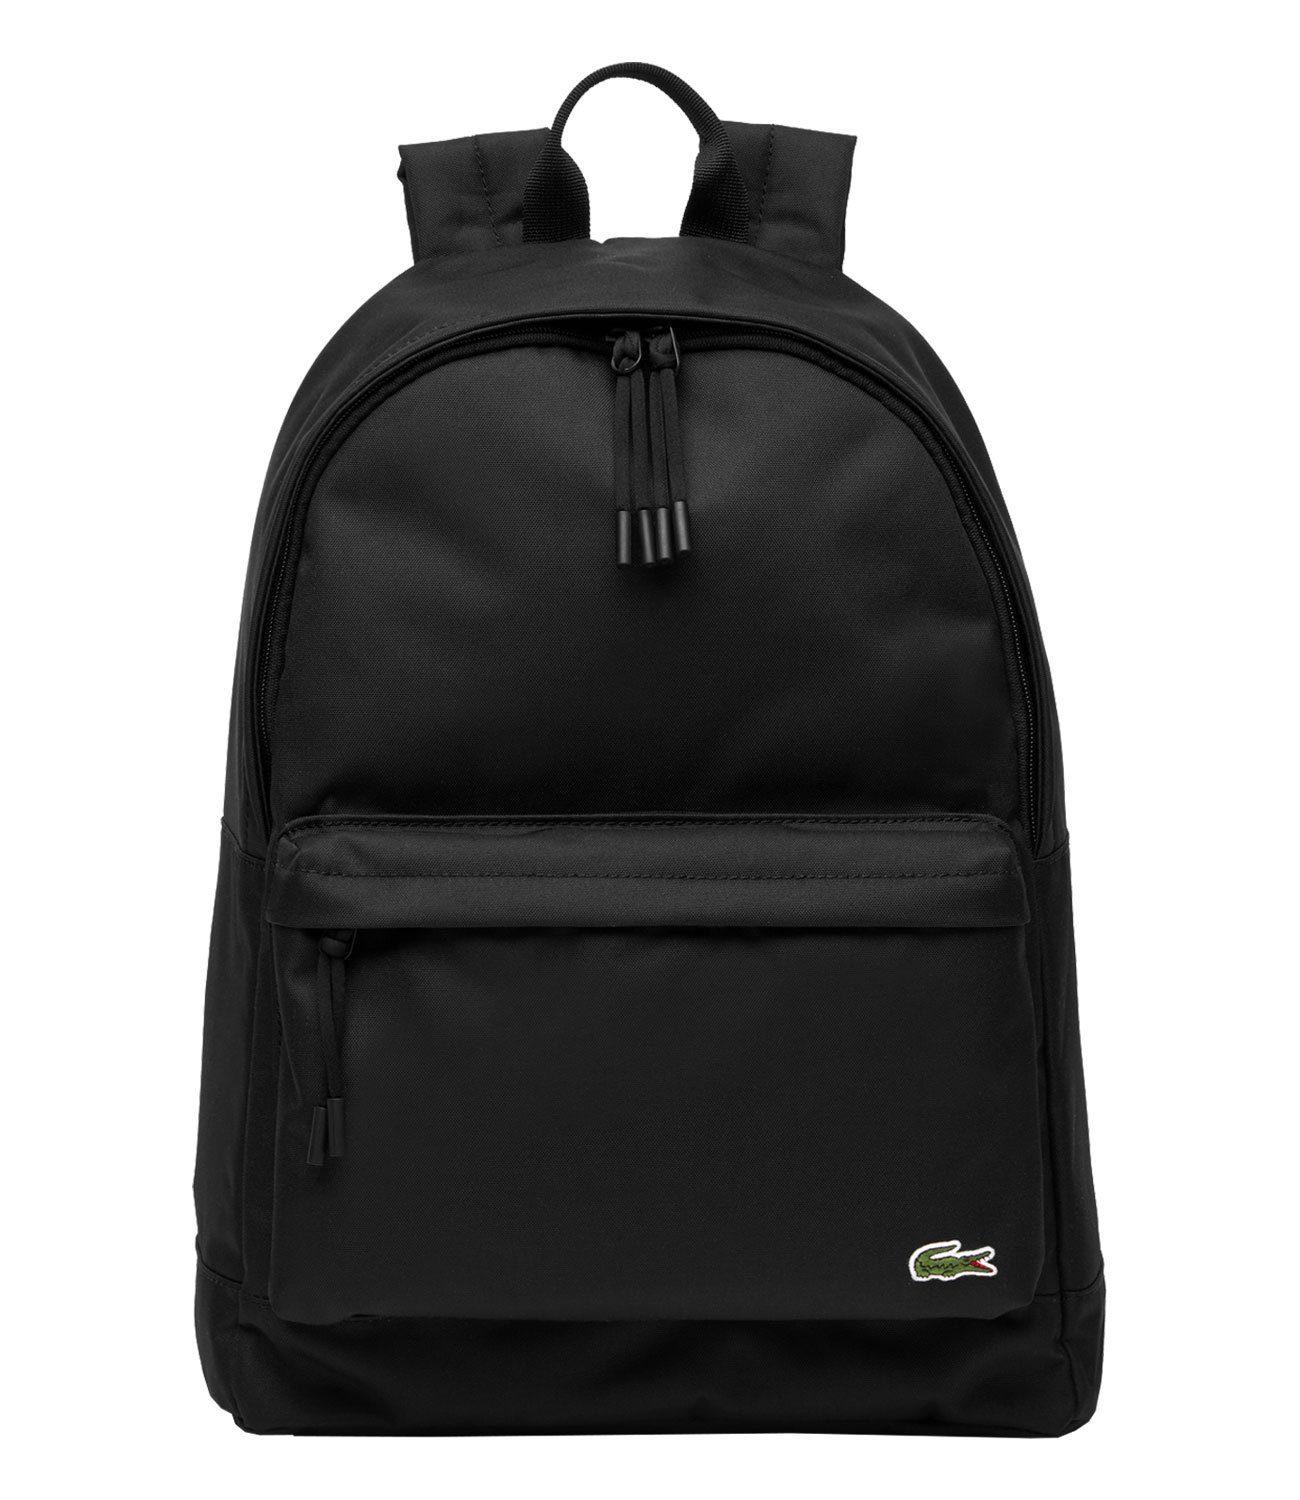 Lacoste Freizeitrucksack Backpack, mit separatem gepolstertem 991 Laptopfach black